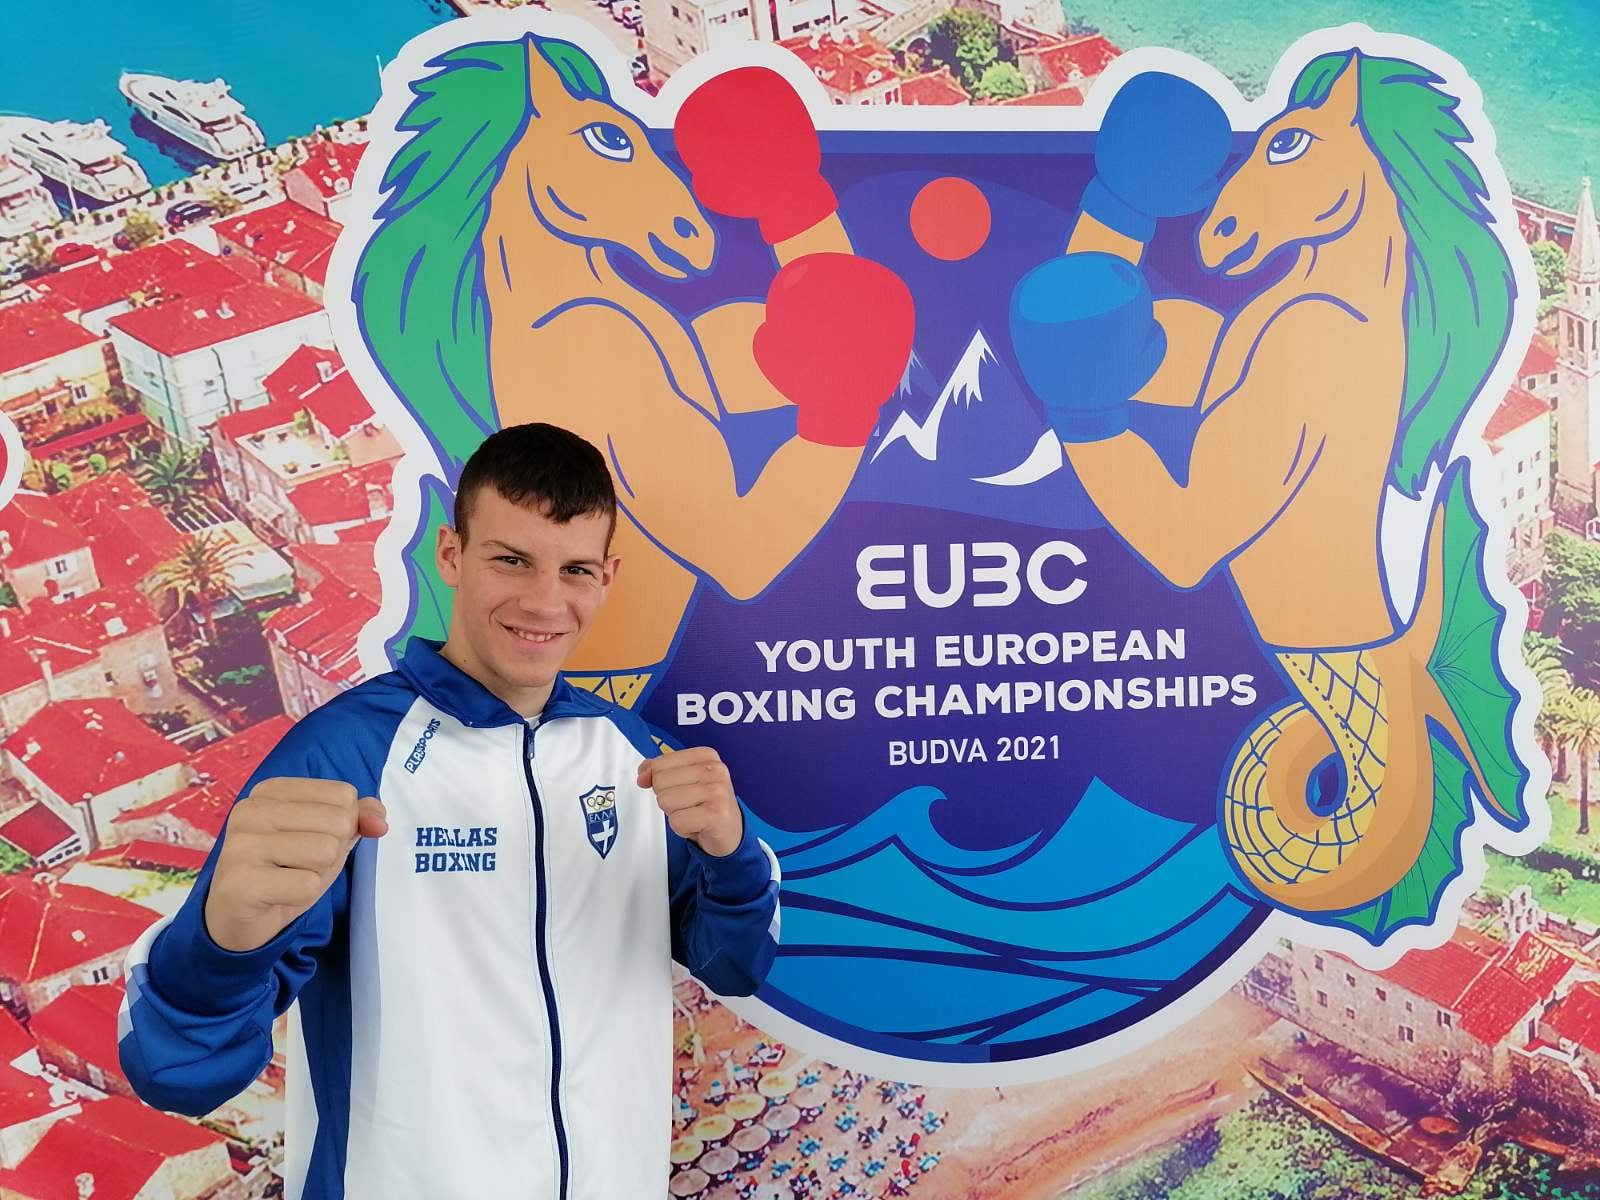 Ξεκινά το Πανευρωπαϊκό πρωτάθλημα πυγμαχίας, ο Πατρινός Δ. Νικόλαου ρίχνεται στη μάχη